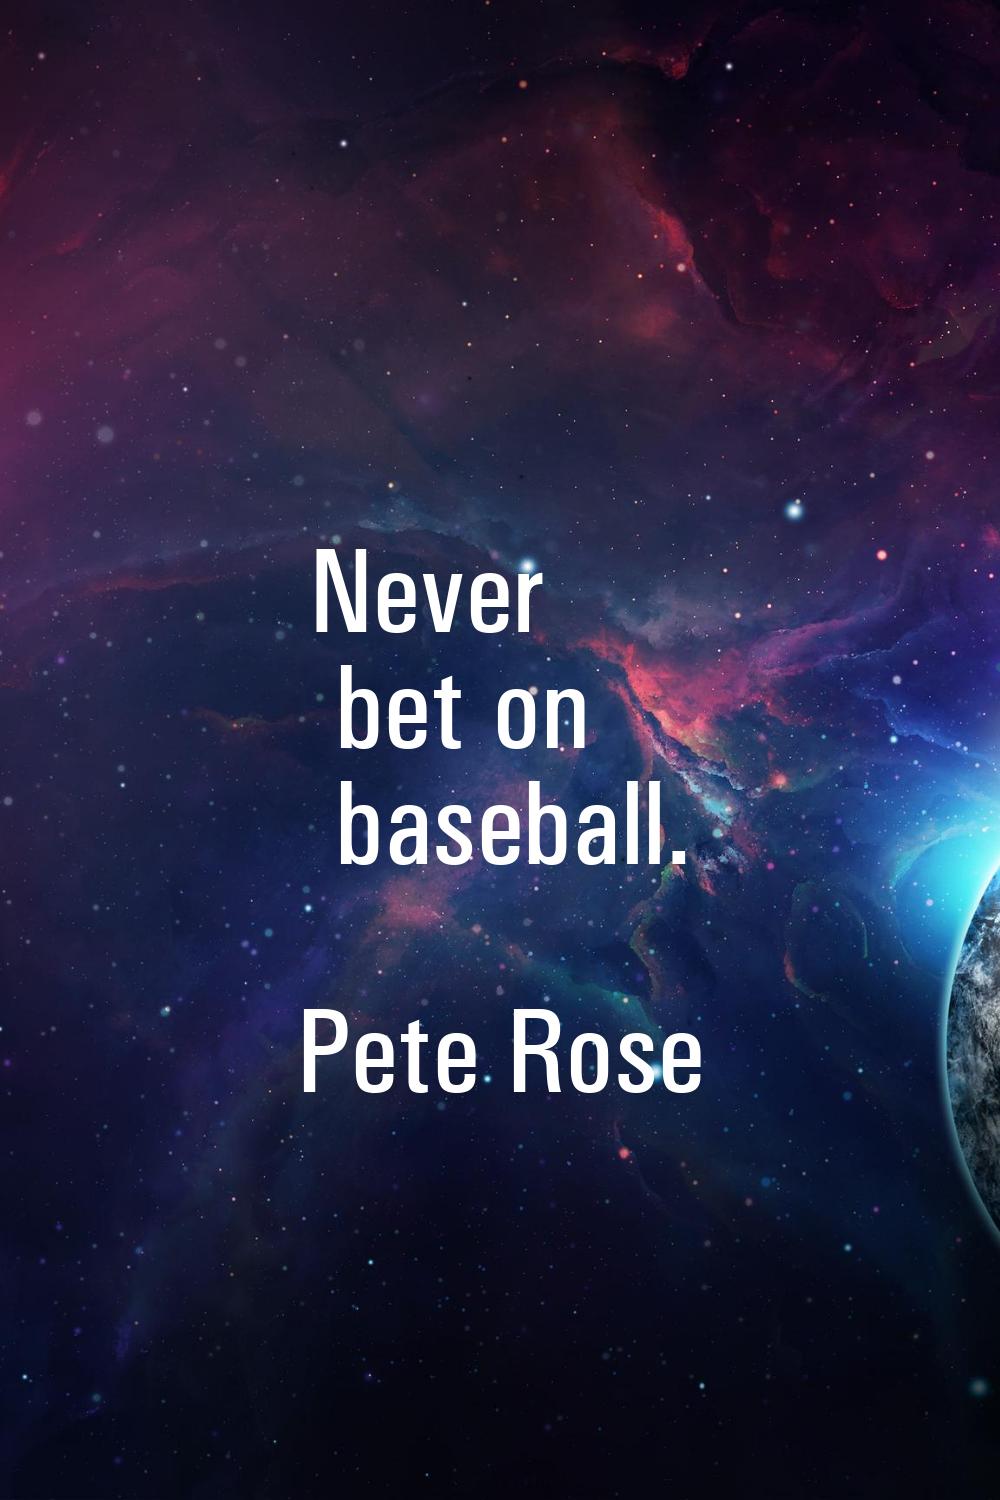 Never bet on baseball.